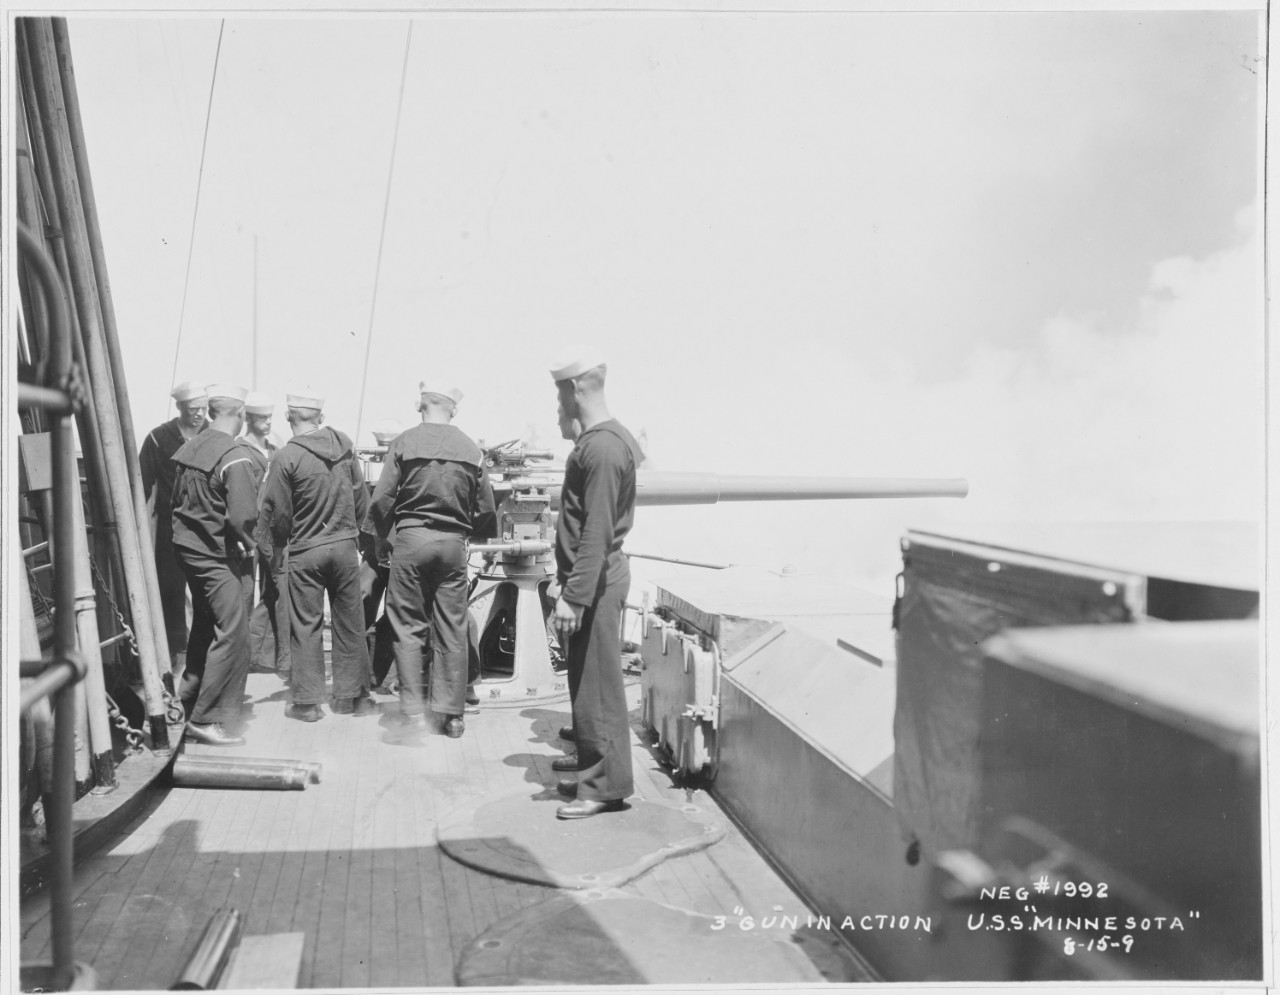 Gun Practice on USS MINNESOTA/ 3" Gun in Action. 8-15-9